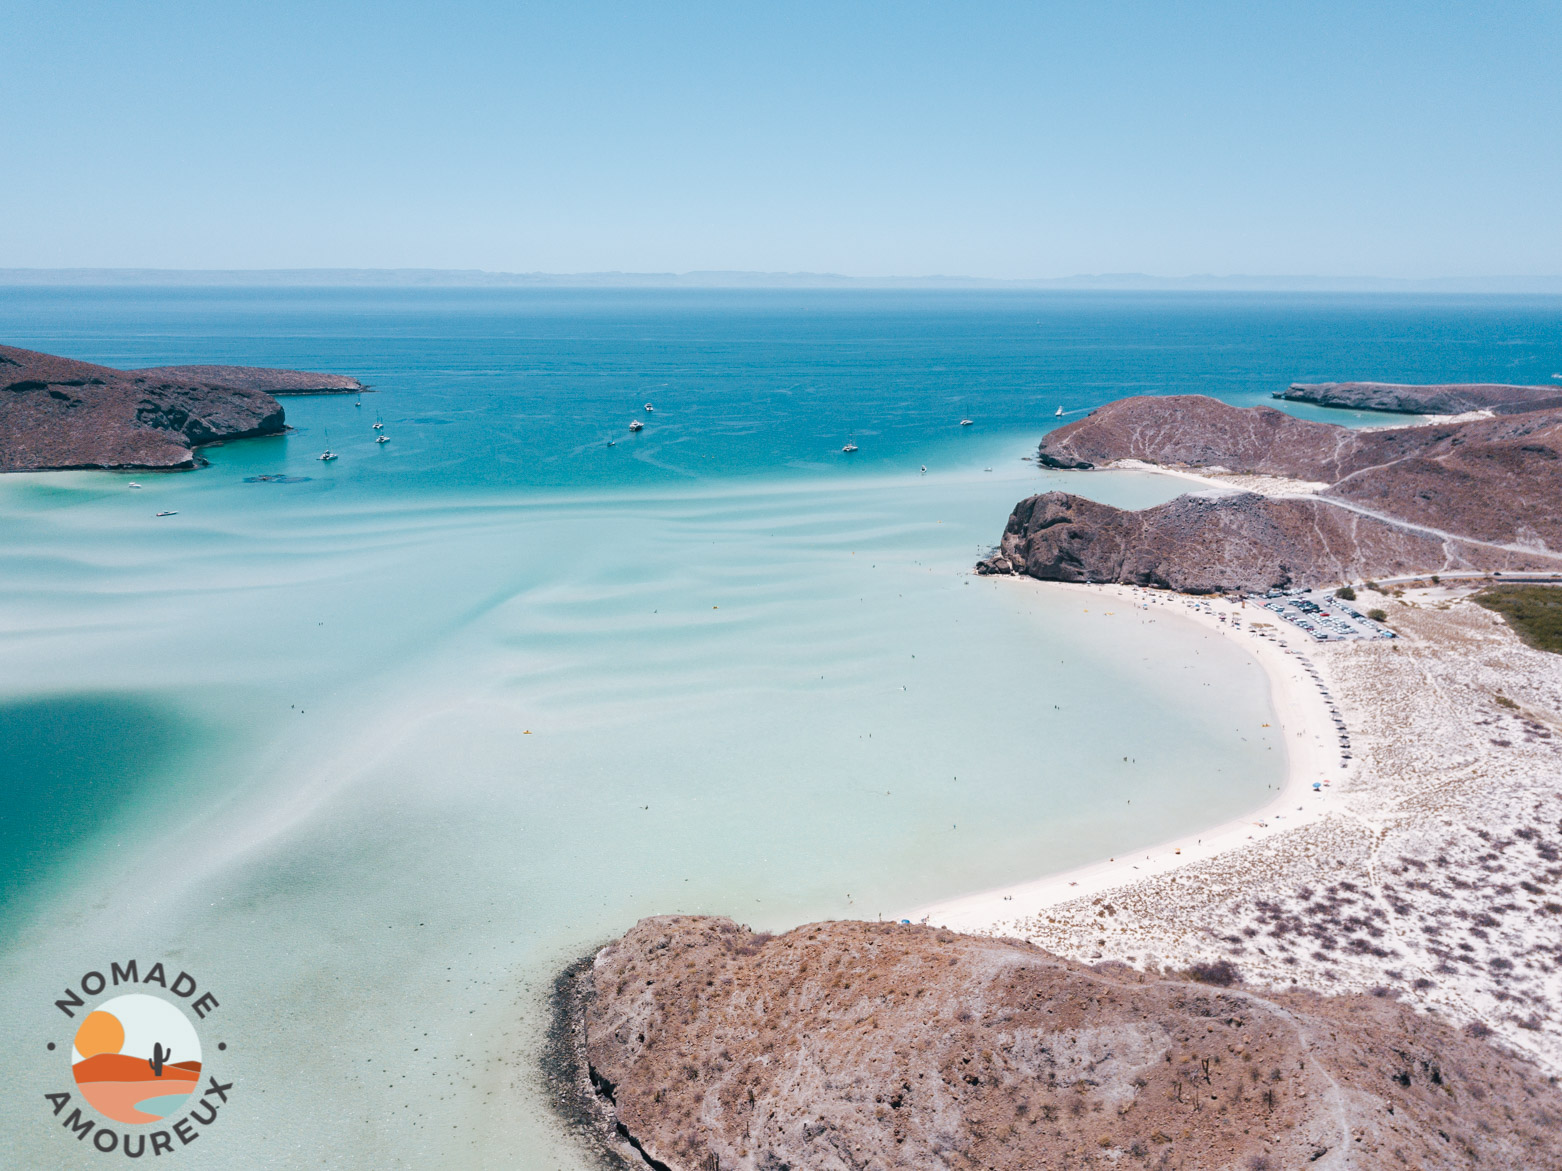 Vue de drone de la baie de Balandra Baja California Sur Mexique - Nomade Amoureux 